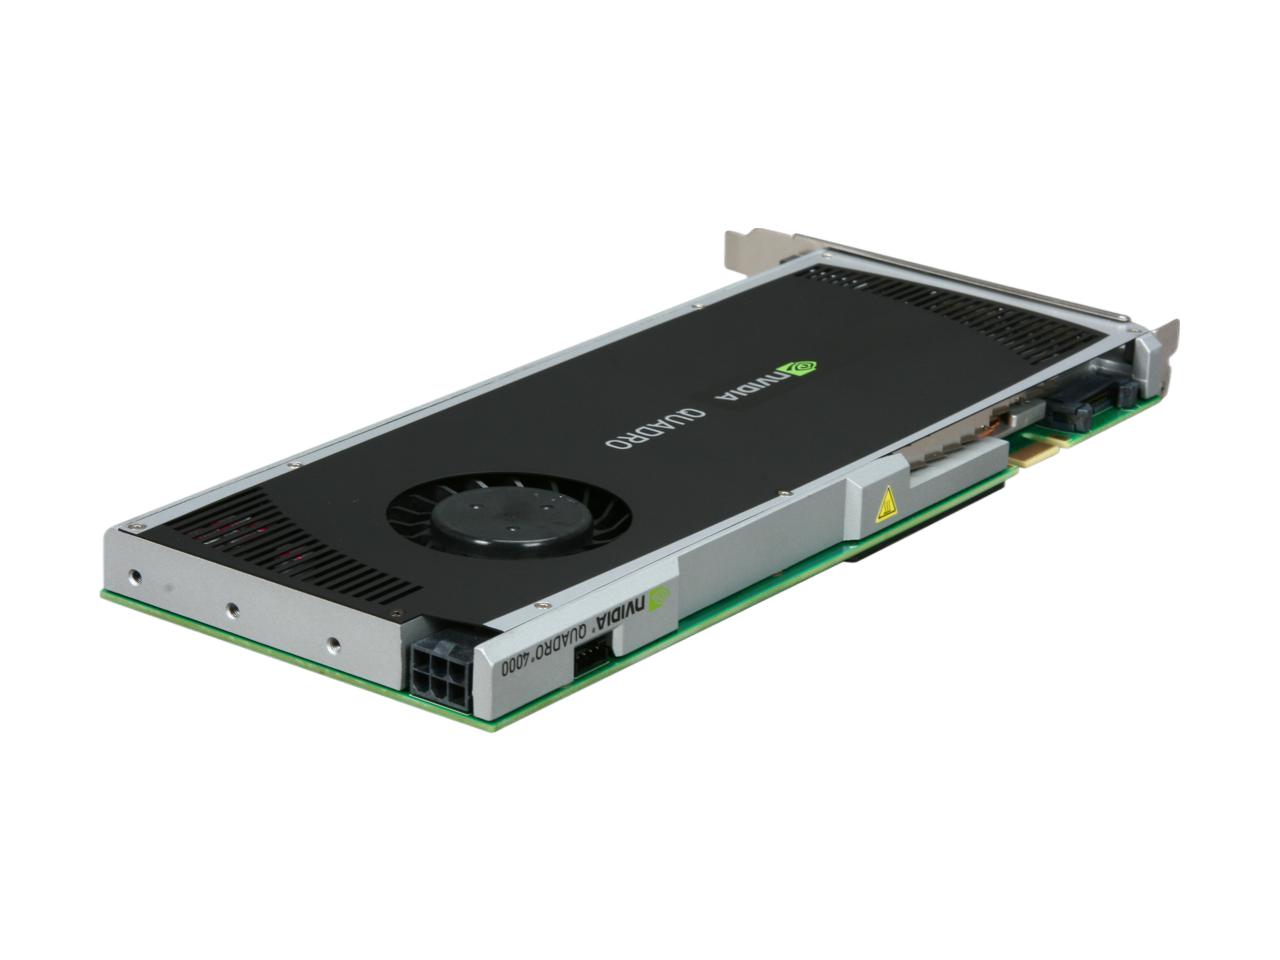 PNY NVIDIA Quadro 4000 2GB 256-bit GDDR5 PCI Express 2.0 x16 Workstation Video Card VCQ4000-PB